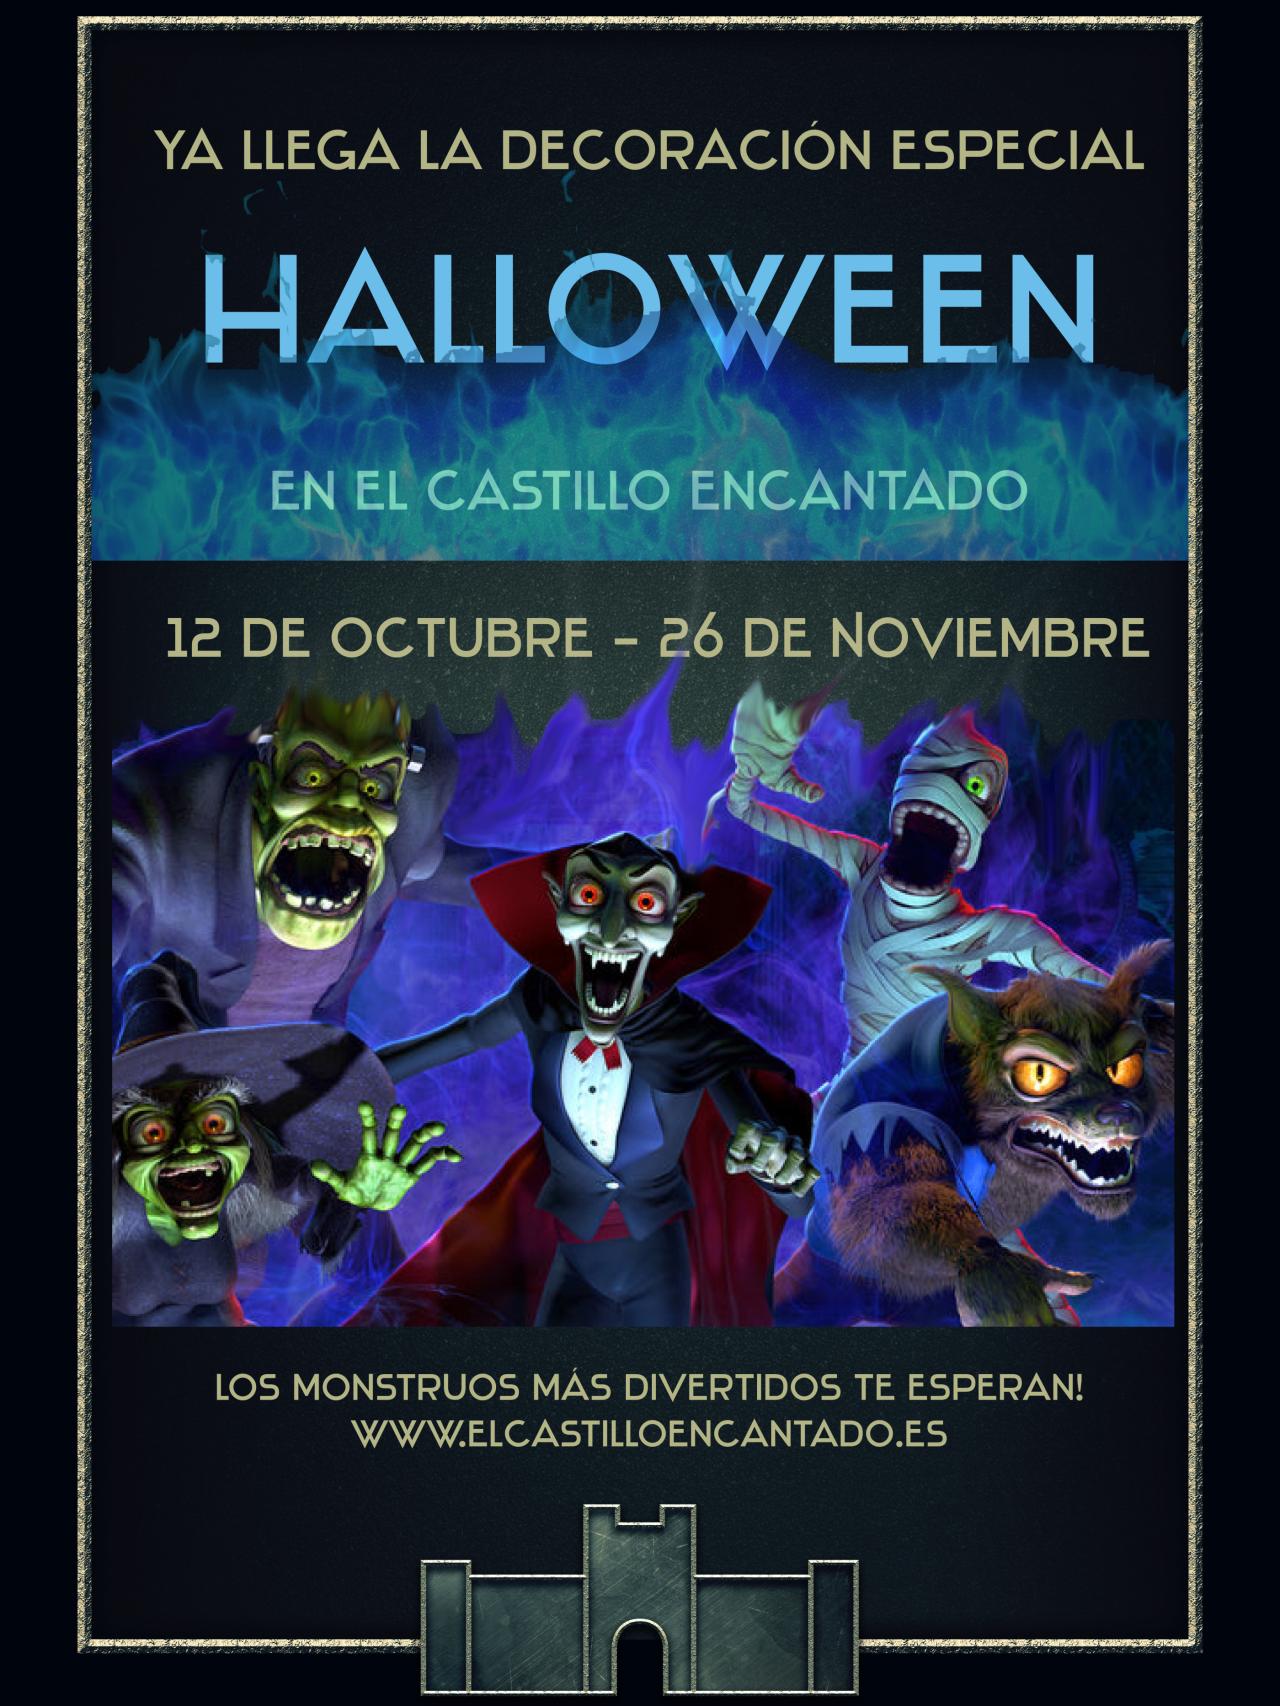 Imagen de la promoción de Halloween en el Castillo Encantado de Trigueros